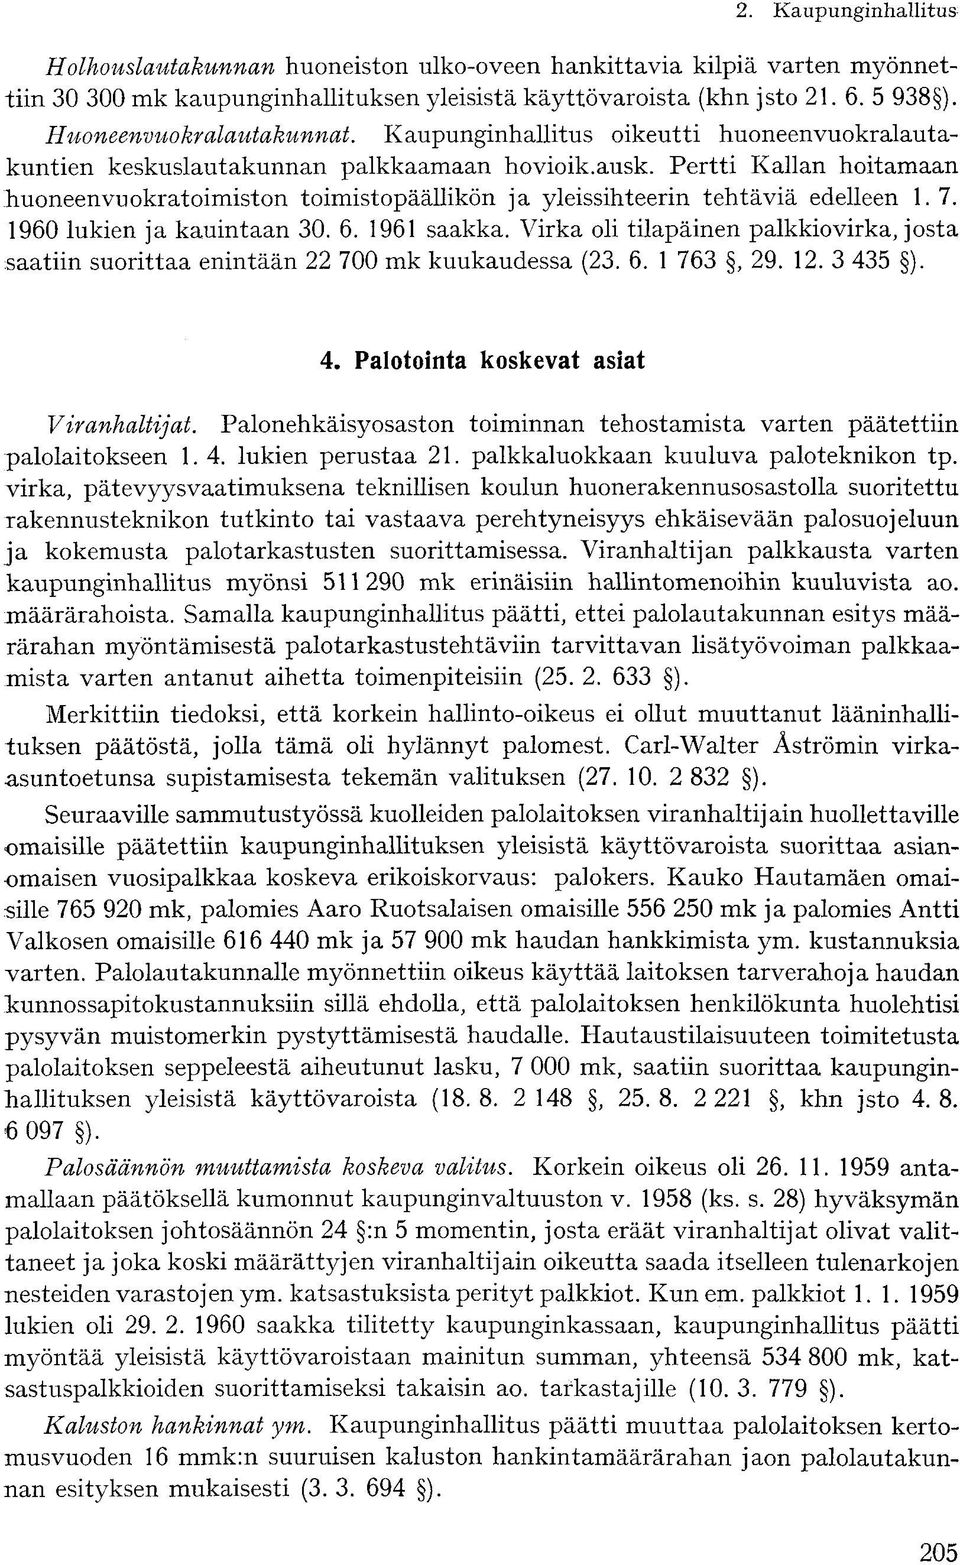 Pertti Kallan hoitamaan huoneenvuokratoimiston toimistopäällikön ja yleissihteerin tehtäviä edelleen 1. 7. 1960 lukien ja kauintaan 30. 6. 1961 saakka.